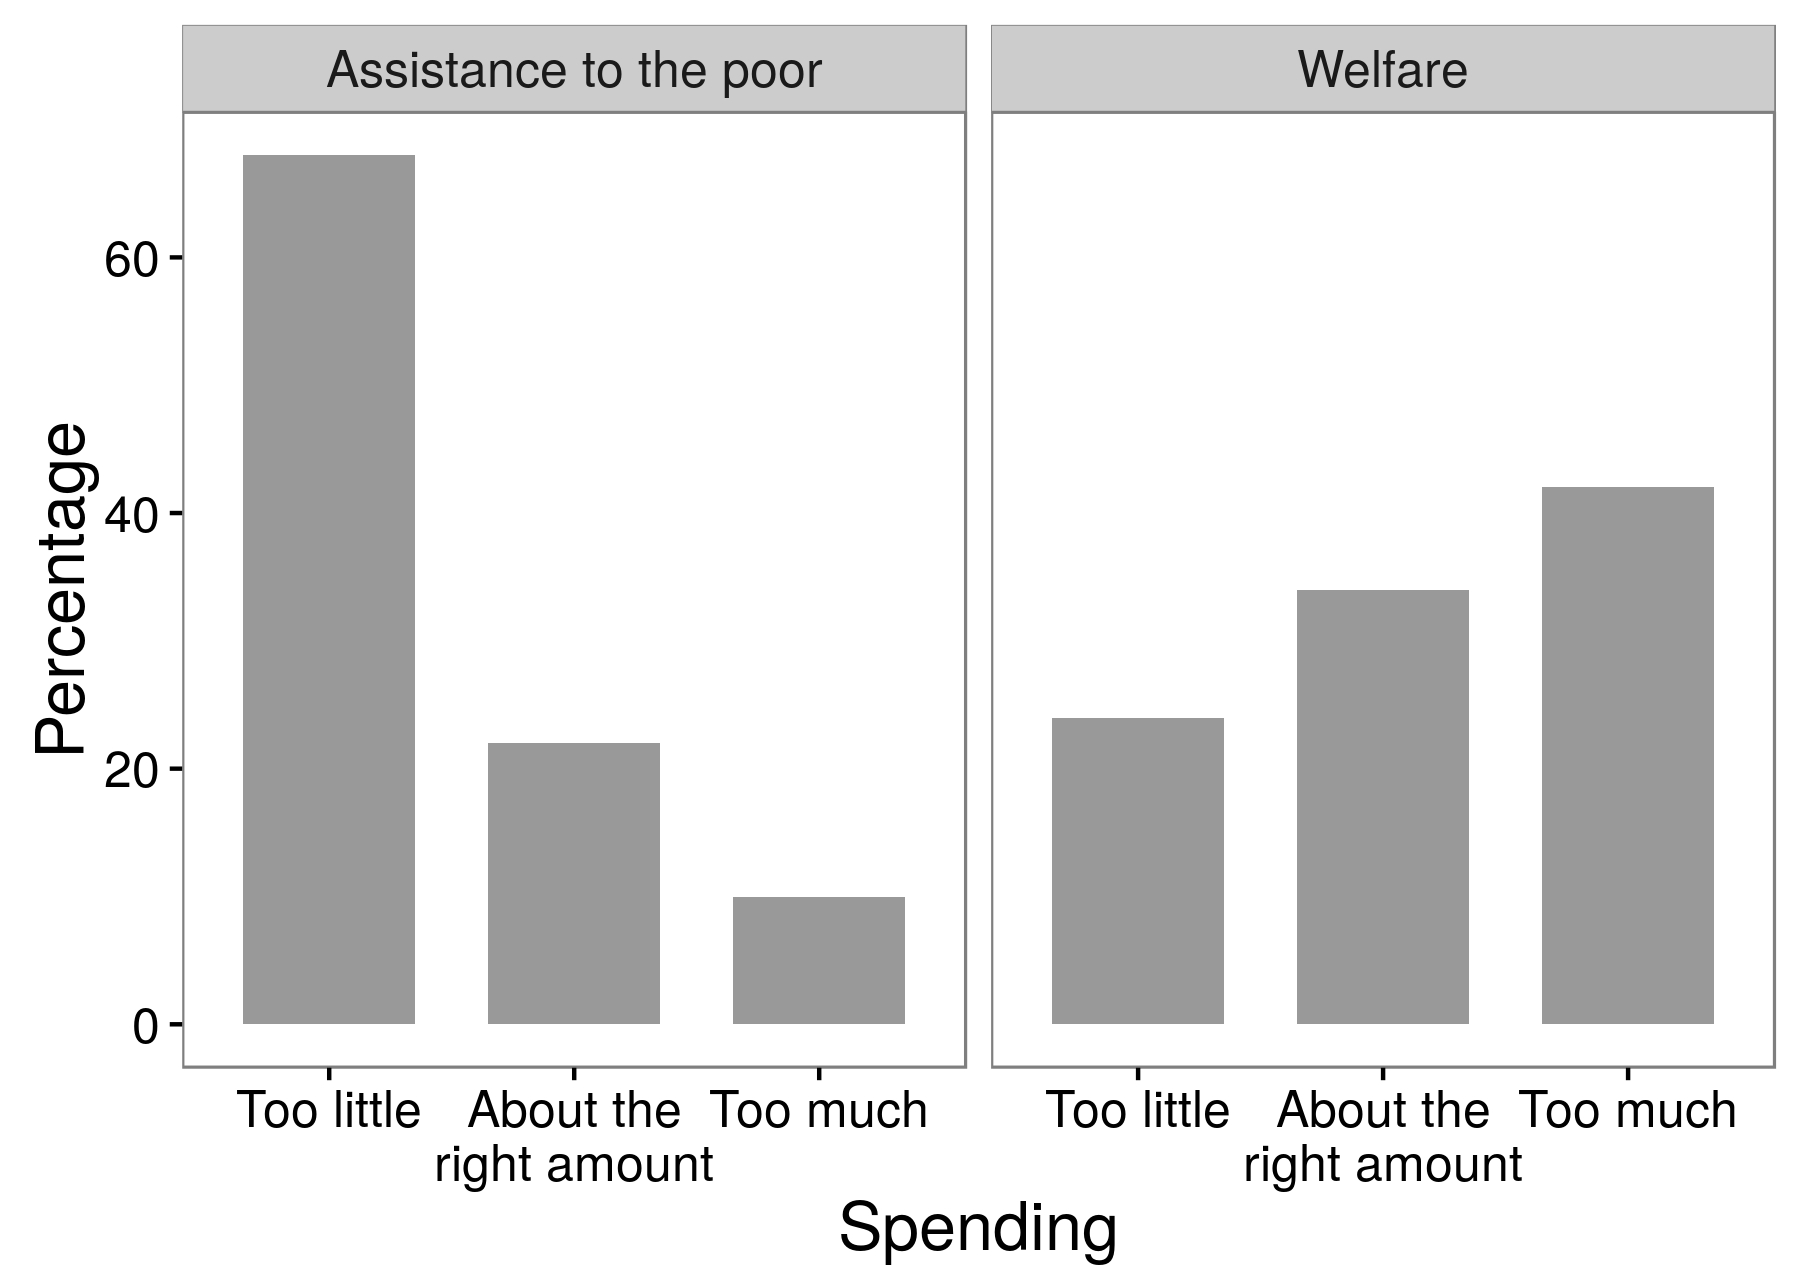 Слика 3.4: Резултати од истражувањето експерименти покажуваат дека испитаниците се многу повеќе поддршка на помош за сиромашните од благосостојбата. Ова е пример за ефект на формулирање на прашањата, при што одговорите што ги добиваат истражувачите зависат од точно кои зборови ги користат во нивните прашања. Адаптиран од Хубер и Париз (2013), табела А1.